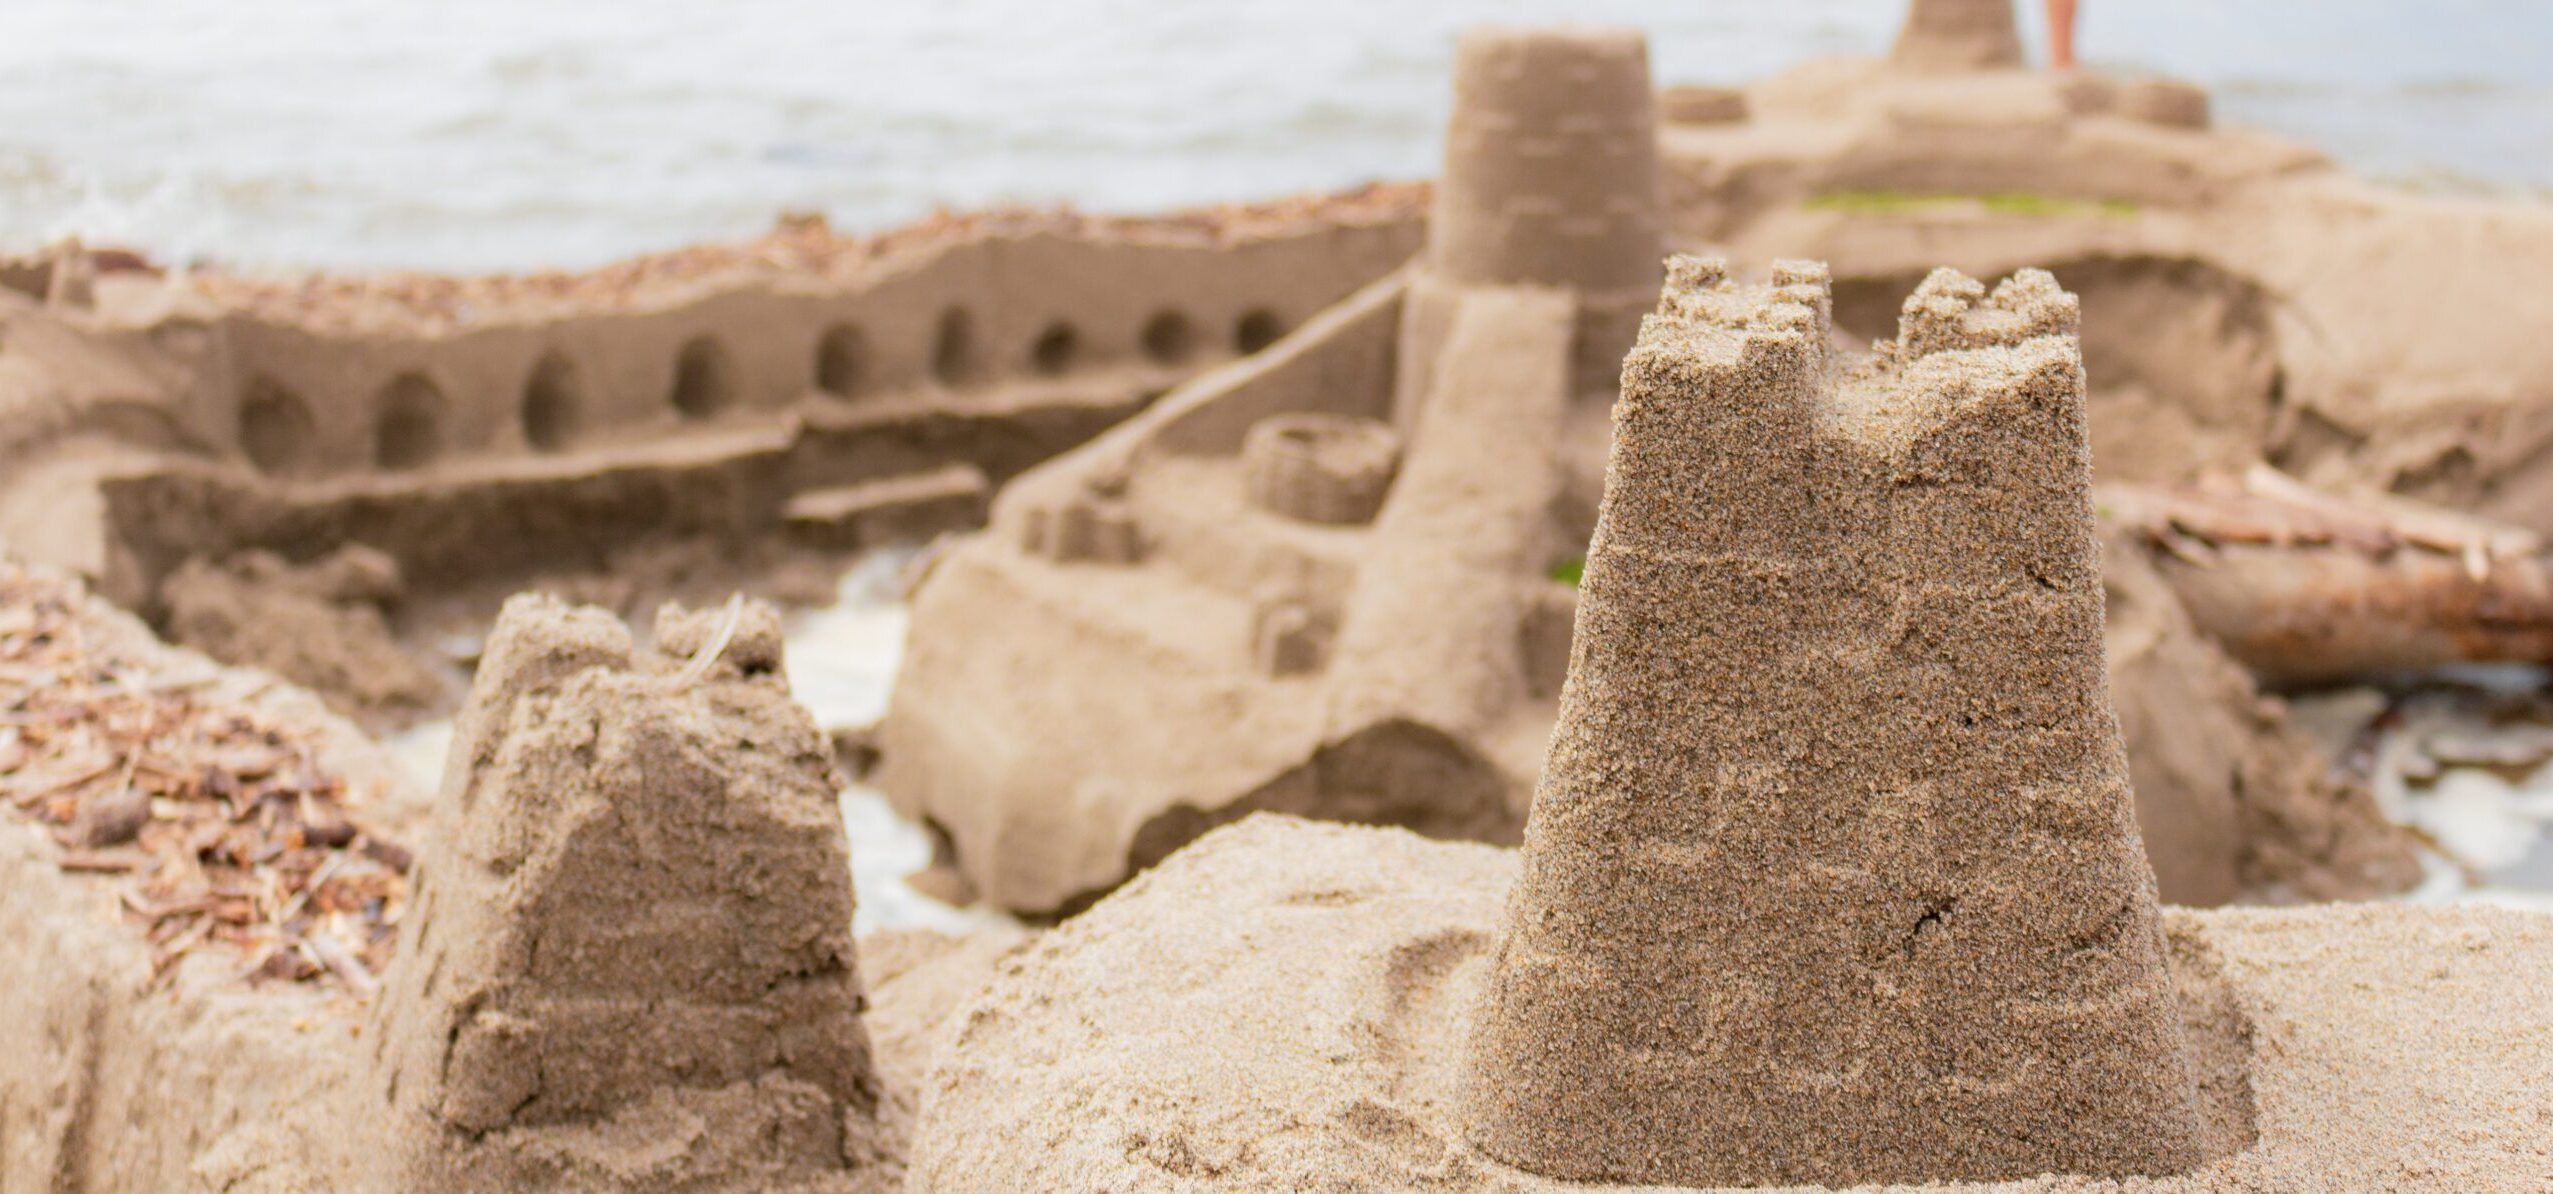 Sandcastles on the beach